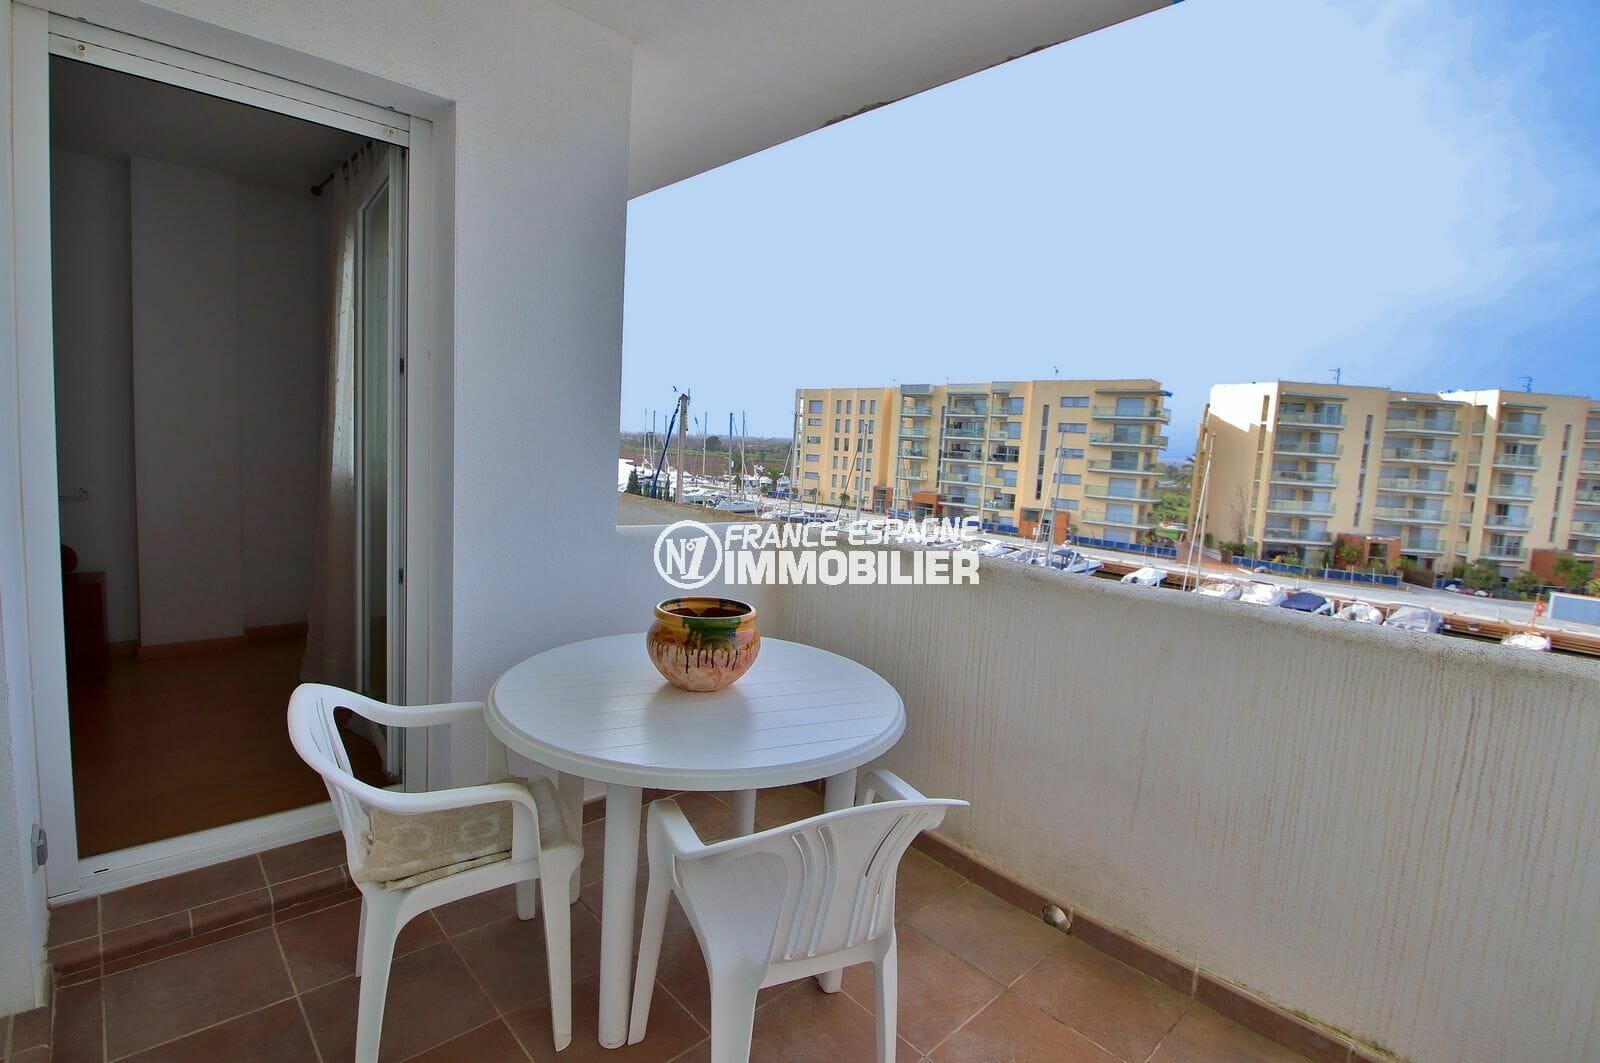 immo roses: appartement 50 m² vue sur la marina, proche plage, possibilité amarre, cave & parking